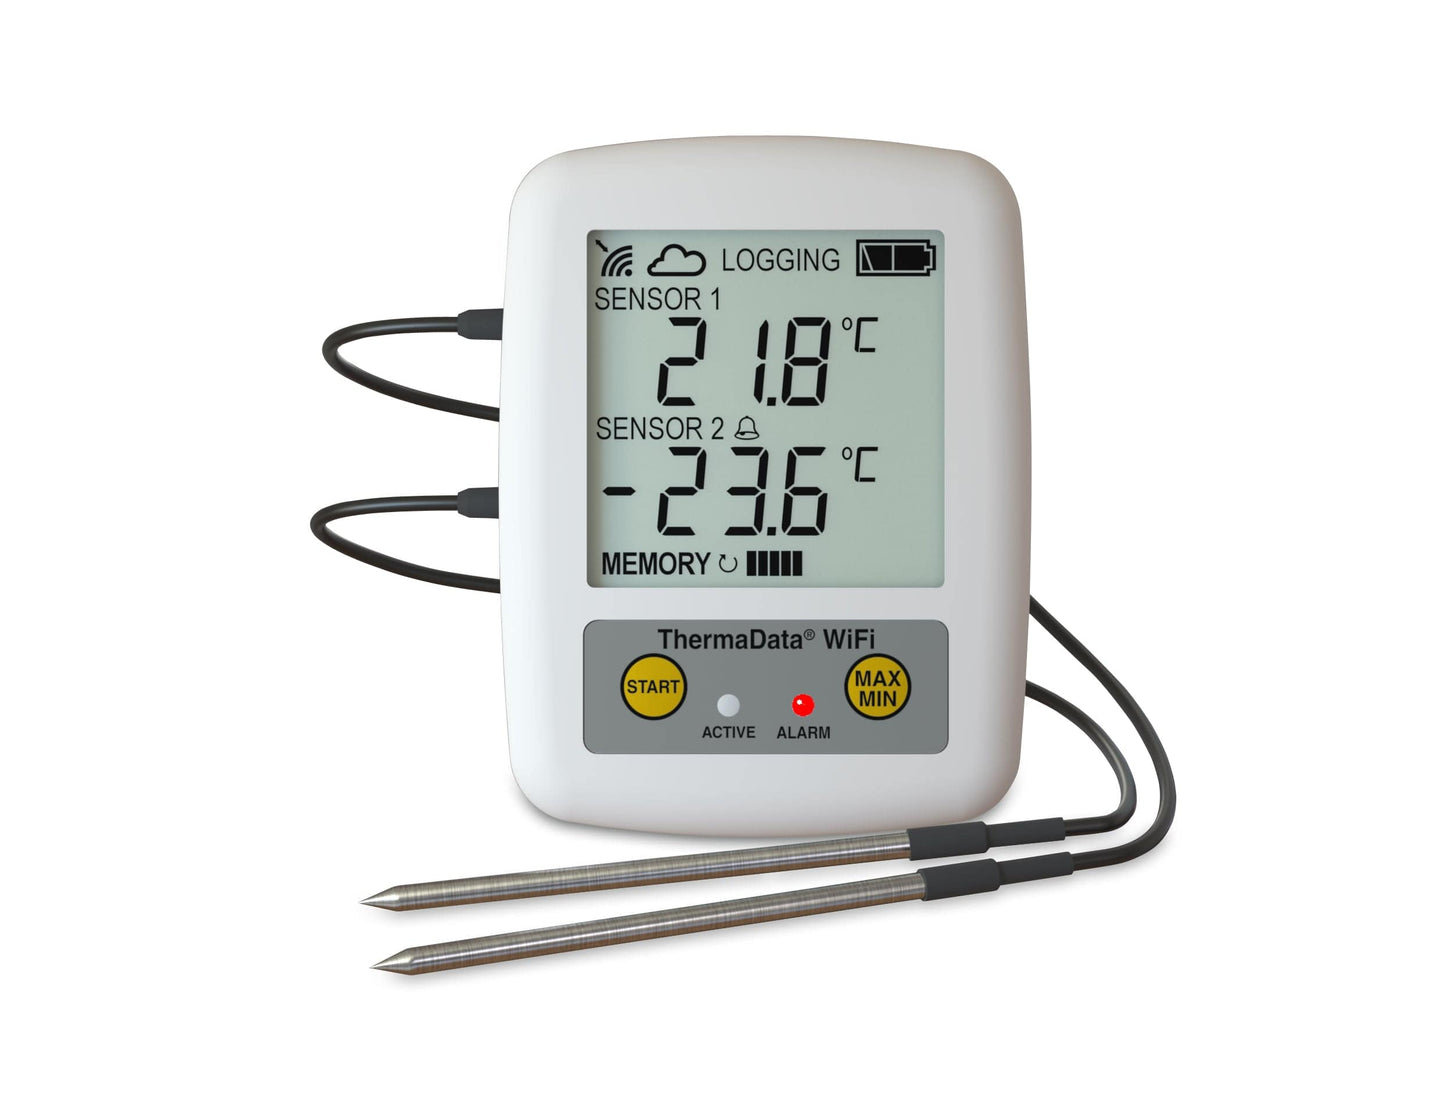 un Thermomètre enregistreur Wifi - thermistance à deux canaux externes de Thermometre.fr sur fond blanc.